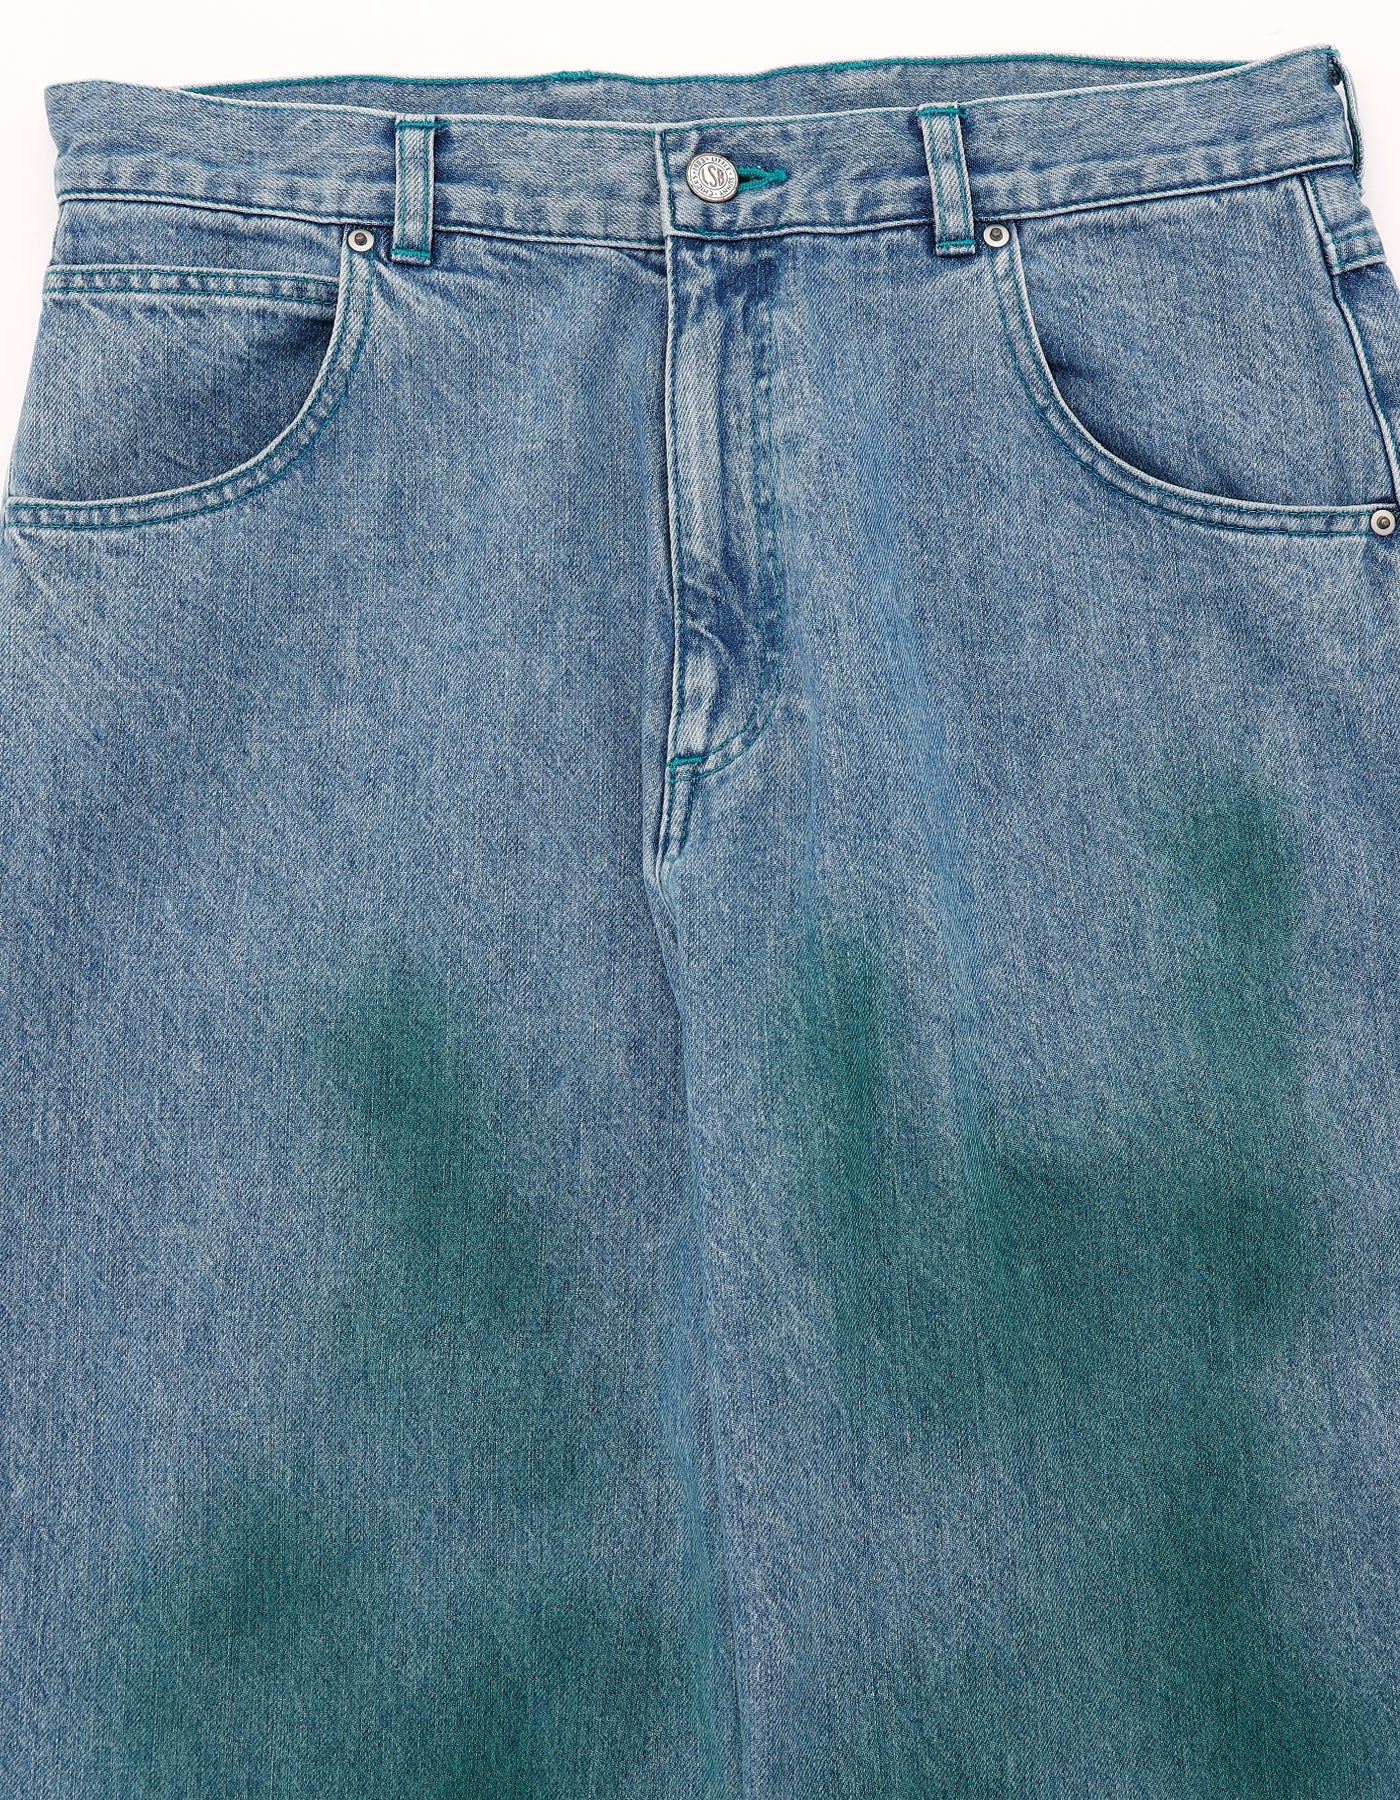 airbrushed denim pants / WASH